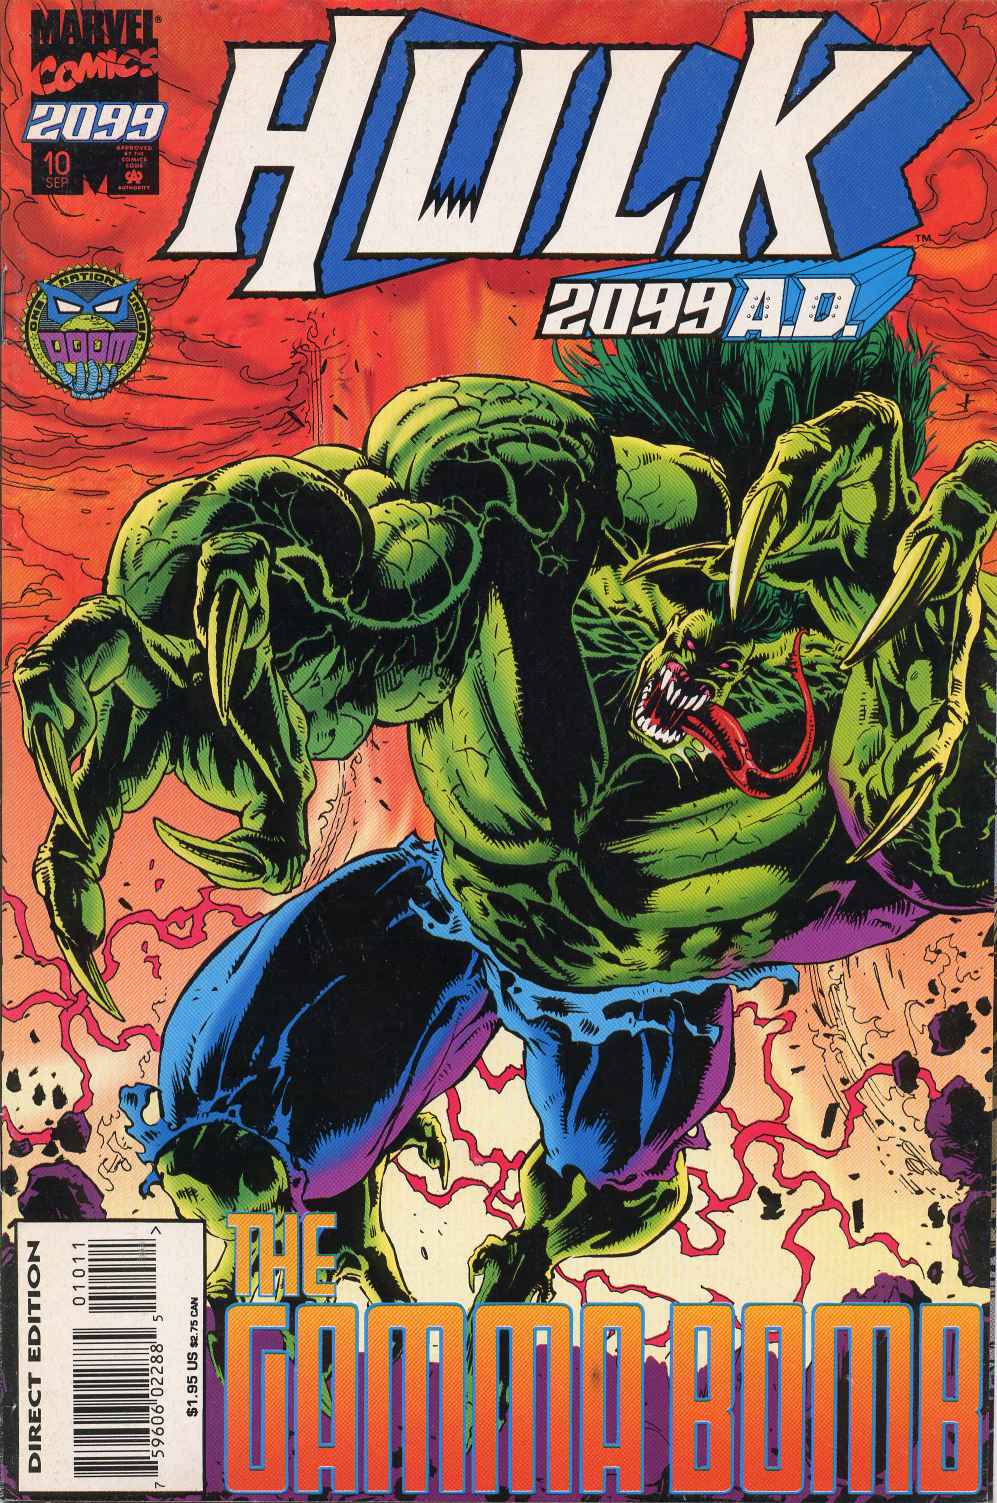 Mr. Morbid's House of Fuckery: So, Who Would Win?: The Hulk Vs. Hulk 2099